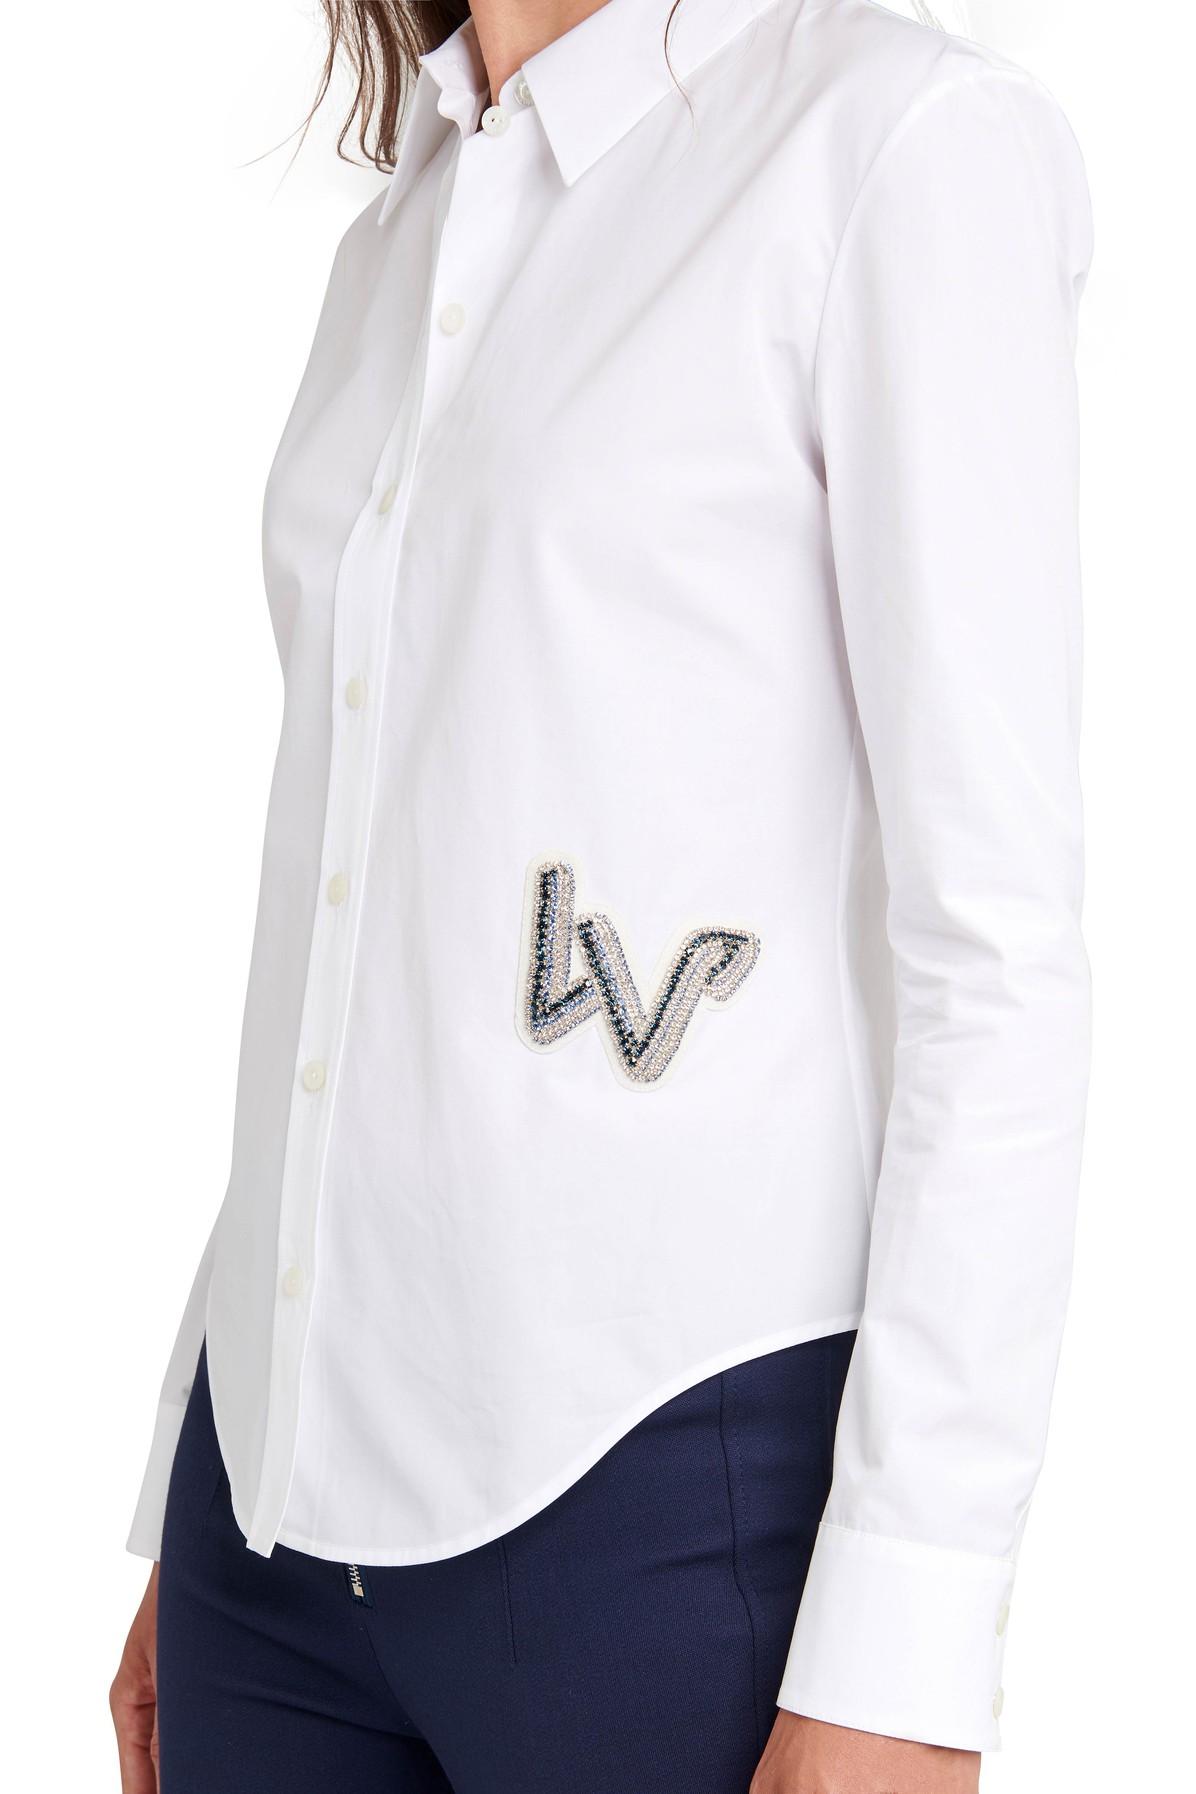 louis vuitton white shirt with logo